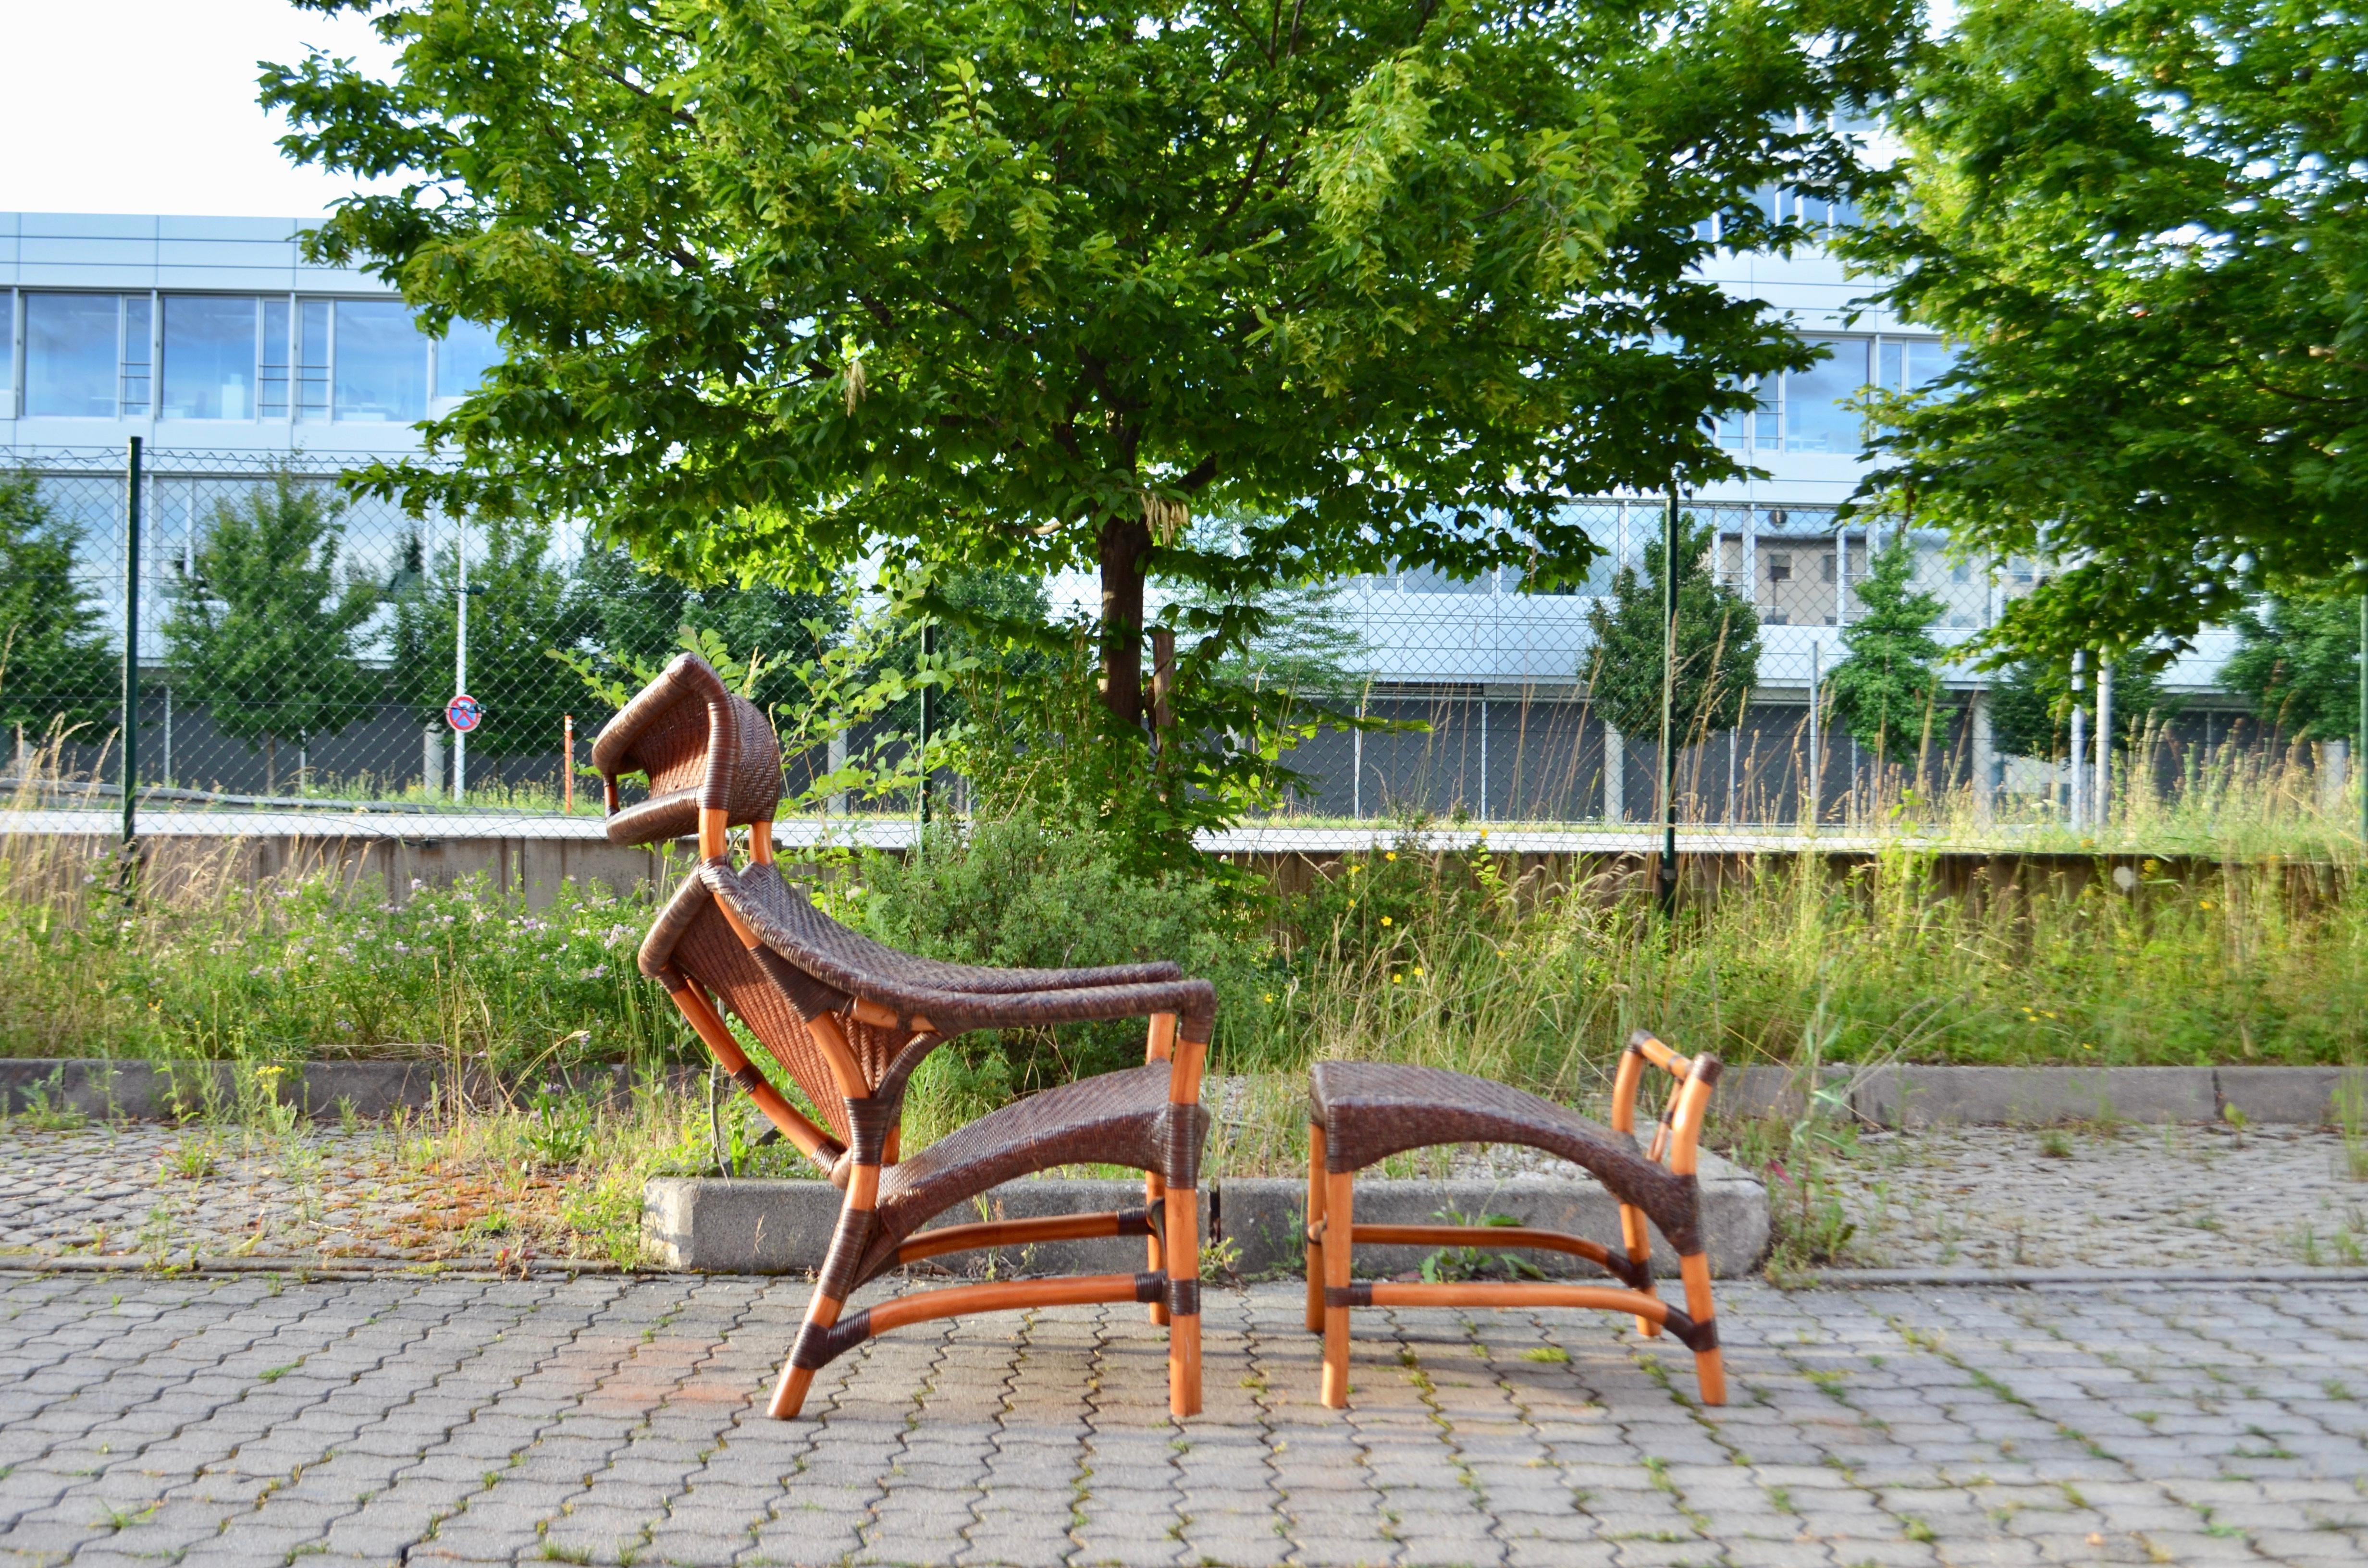 Une belle chaise en canne tressée organique avec un cadre en bambou.
Conçu par Yuzuru Yamakawa pour le rotin Yamkawa.
première version des années 80.
La chaise en rotin de bambou est accompagnée d'un ottoman qui s'harmonise parfaitement avec la